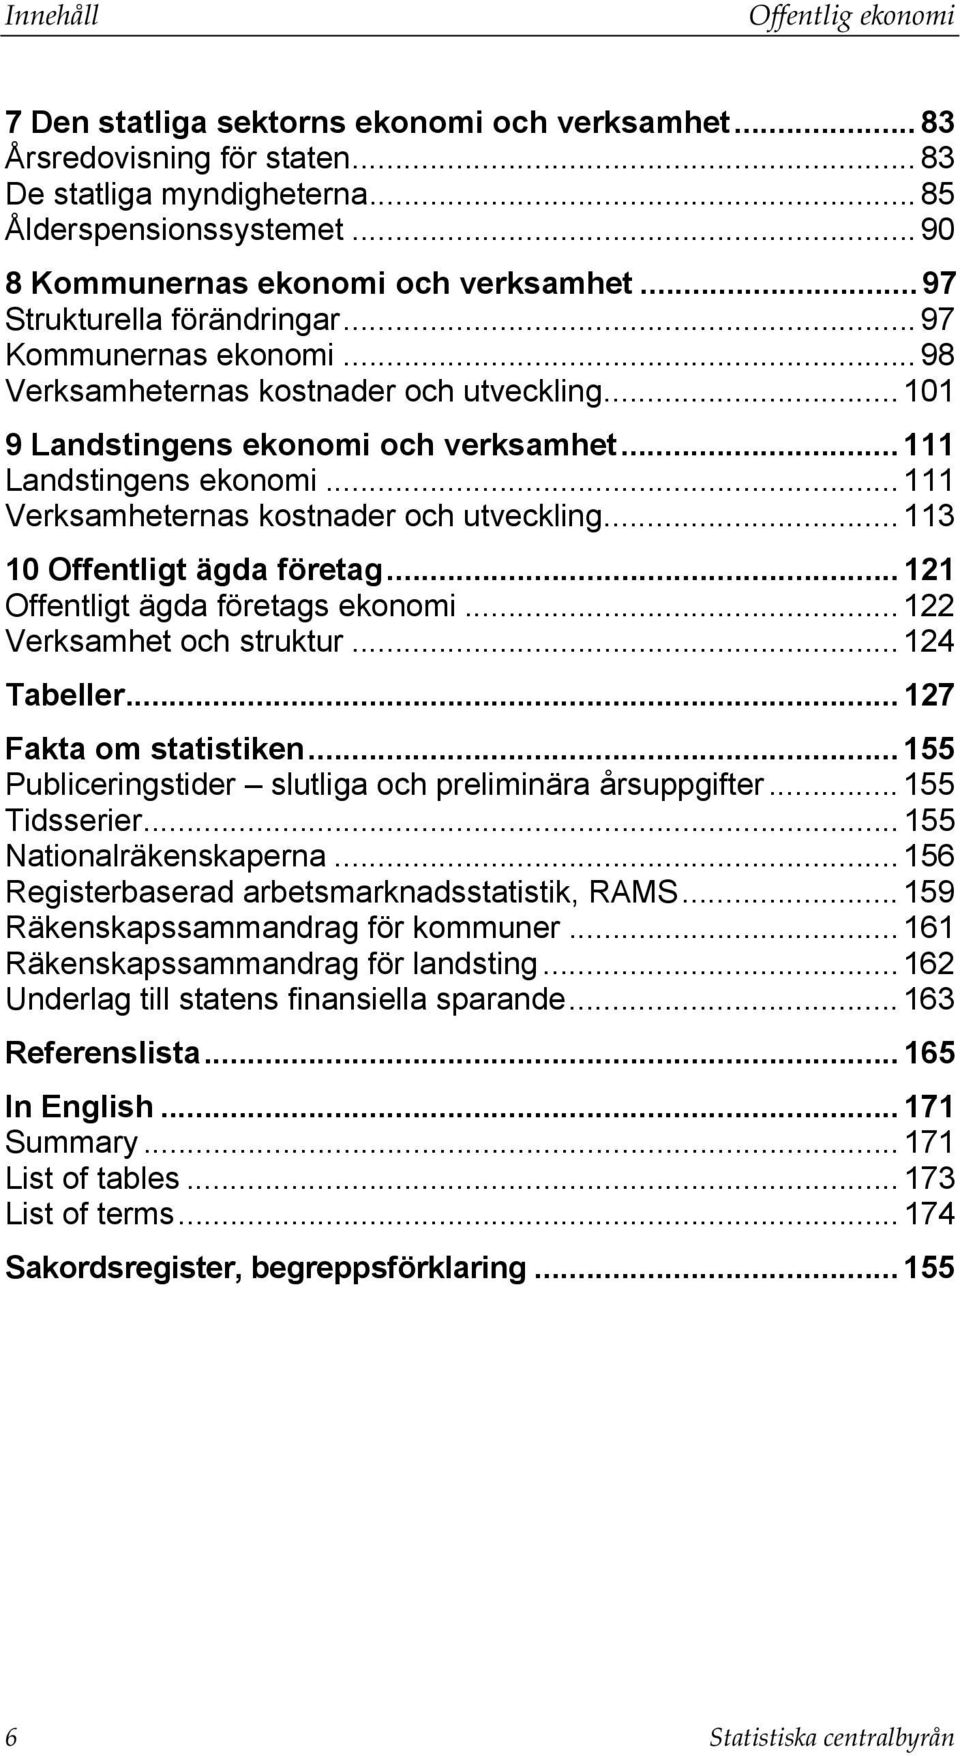 .. 111 Landstingens ekonomi... 111 Verksamheternas kostnader och utveckling...113 10 Offentligt ägda företag... 121 Offentligt ägda företags ekonomi... 122 Verksamhet och struktur... 124 Tabeller.